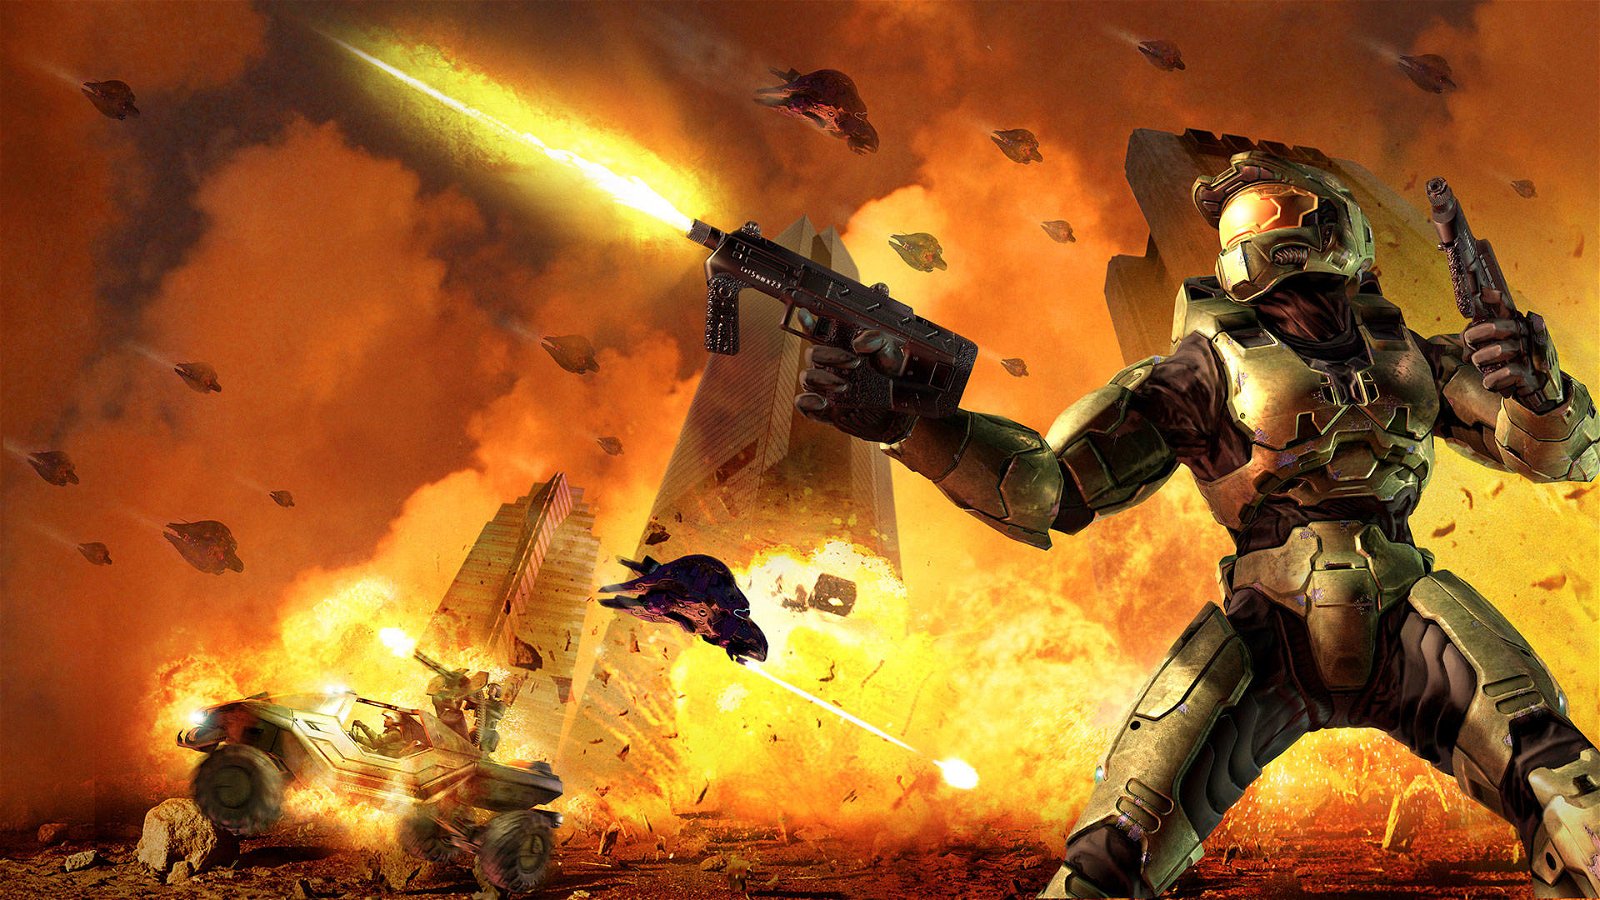 Immagine di Halo 2 su PC, sono iniziati i primi test